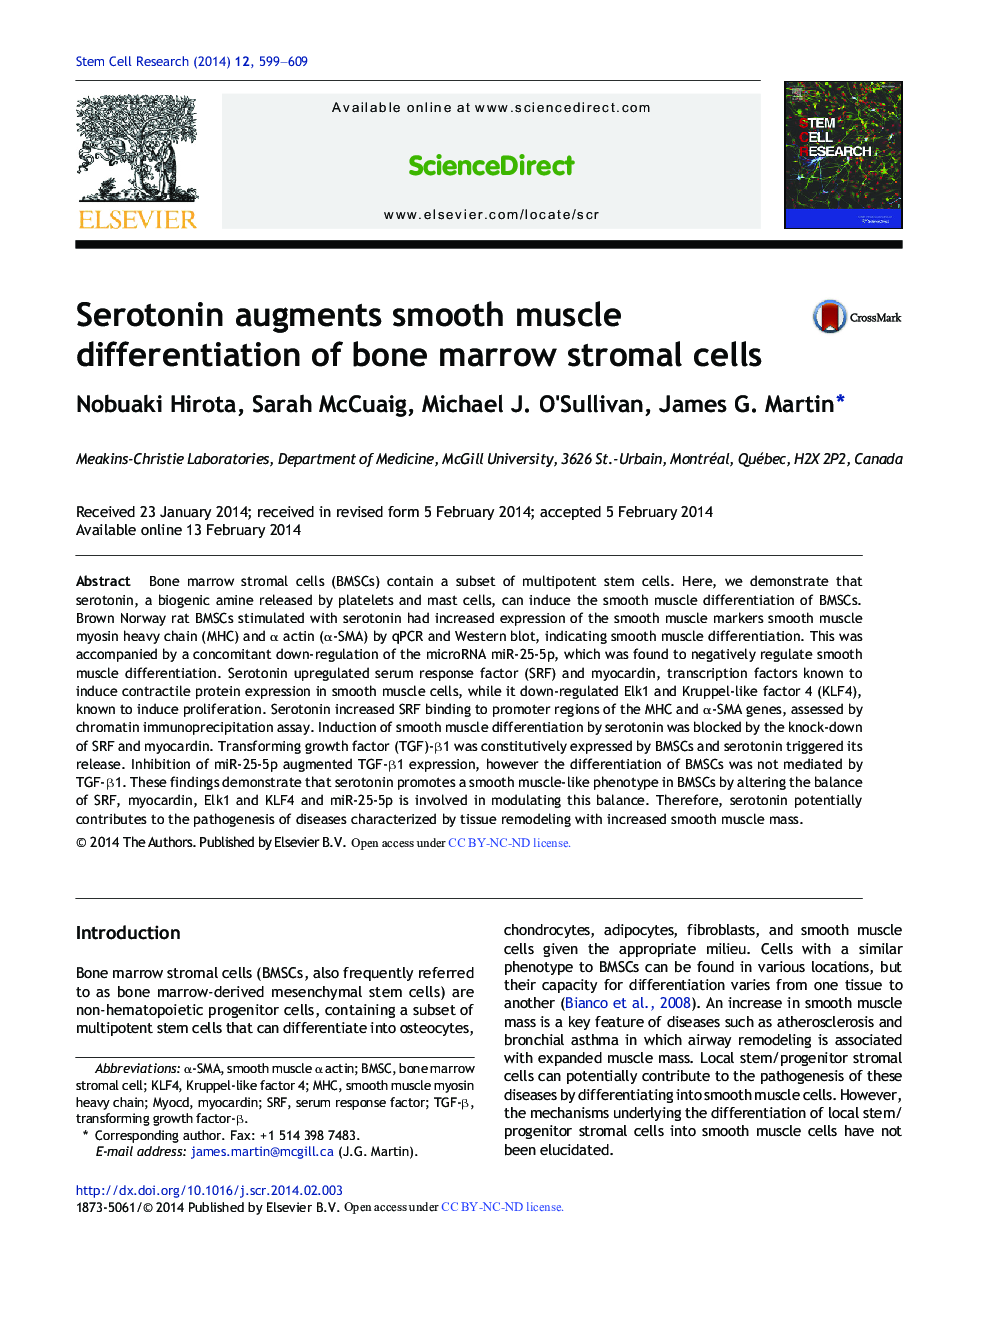 سروتونین تمایز ماهیچه های صاف سلول های استروما مغز استخوان را افزایش می دهد 